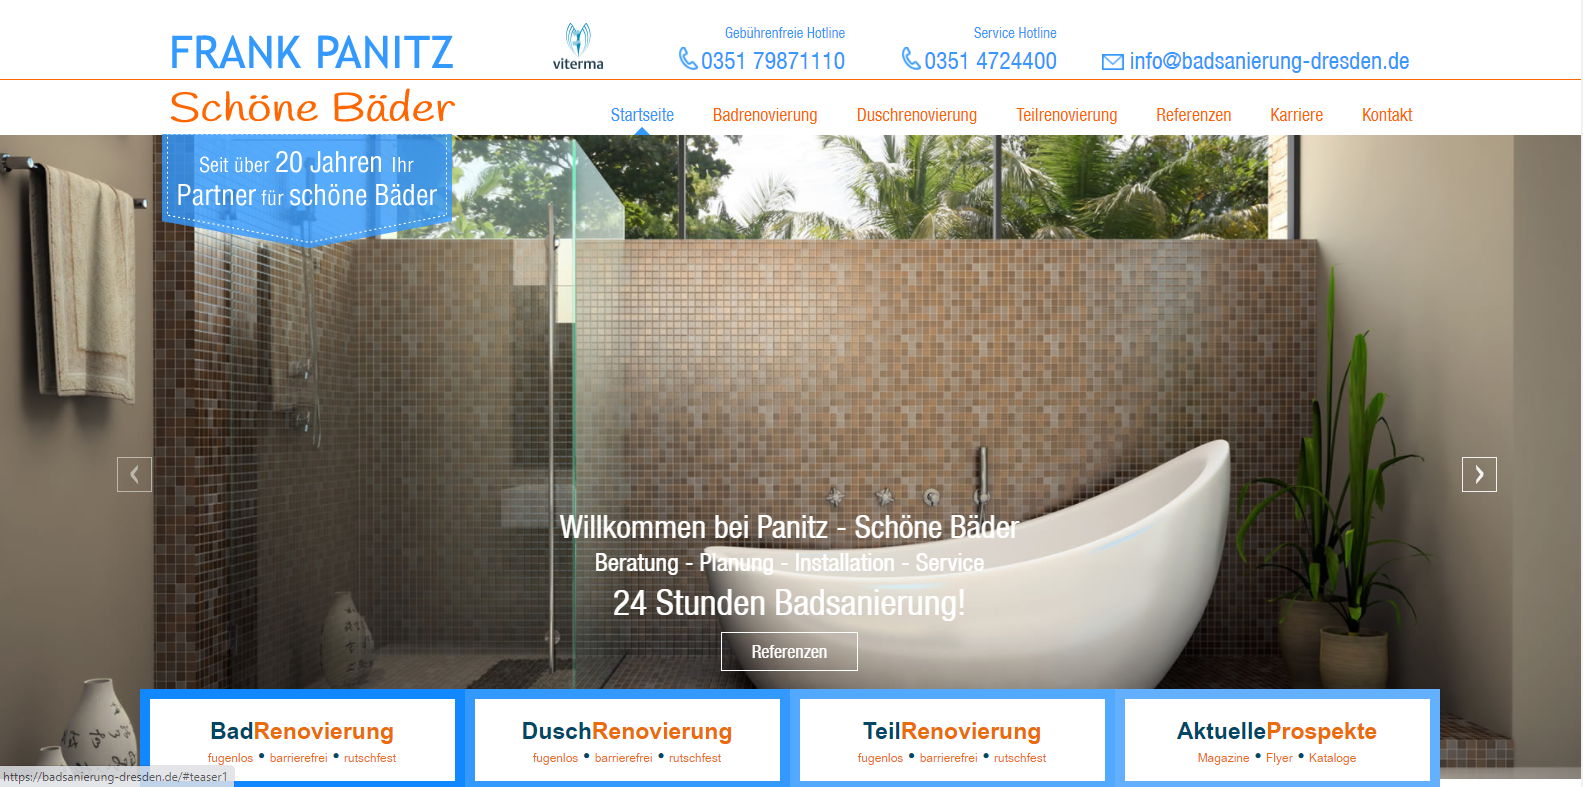 Webseite für Handwerksbetrieb zur Badrenovierung in Dresden - Sachsen